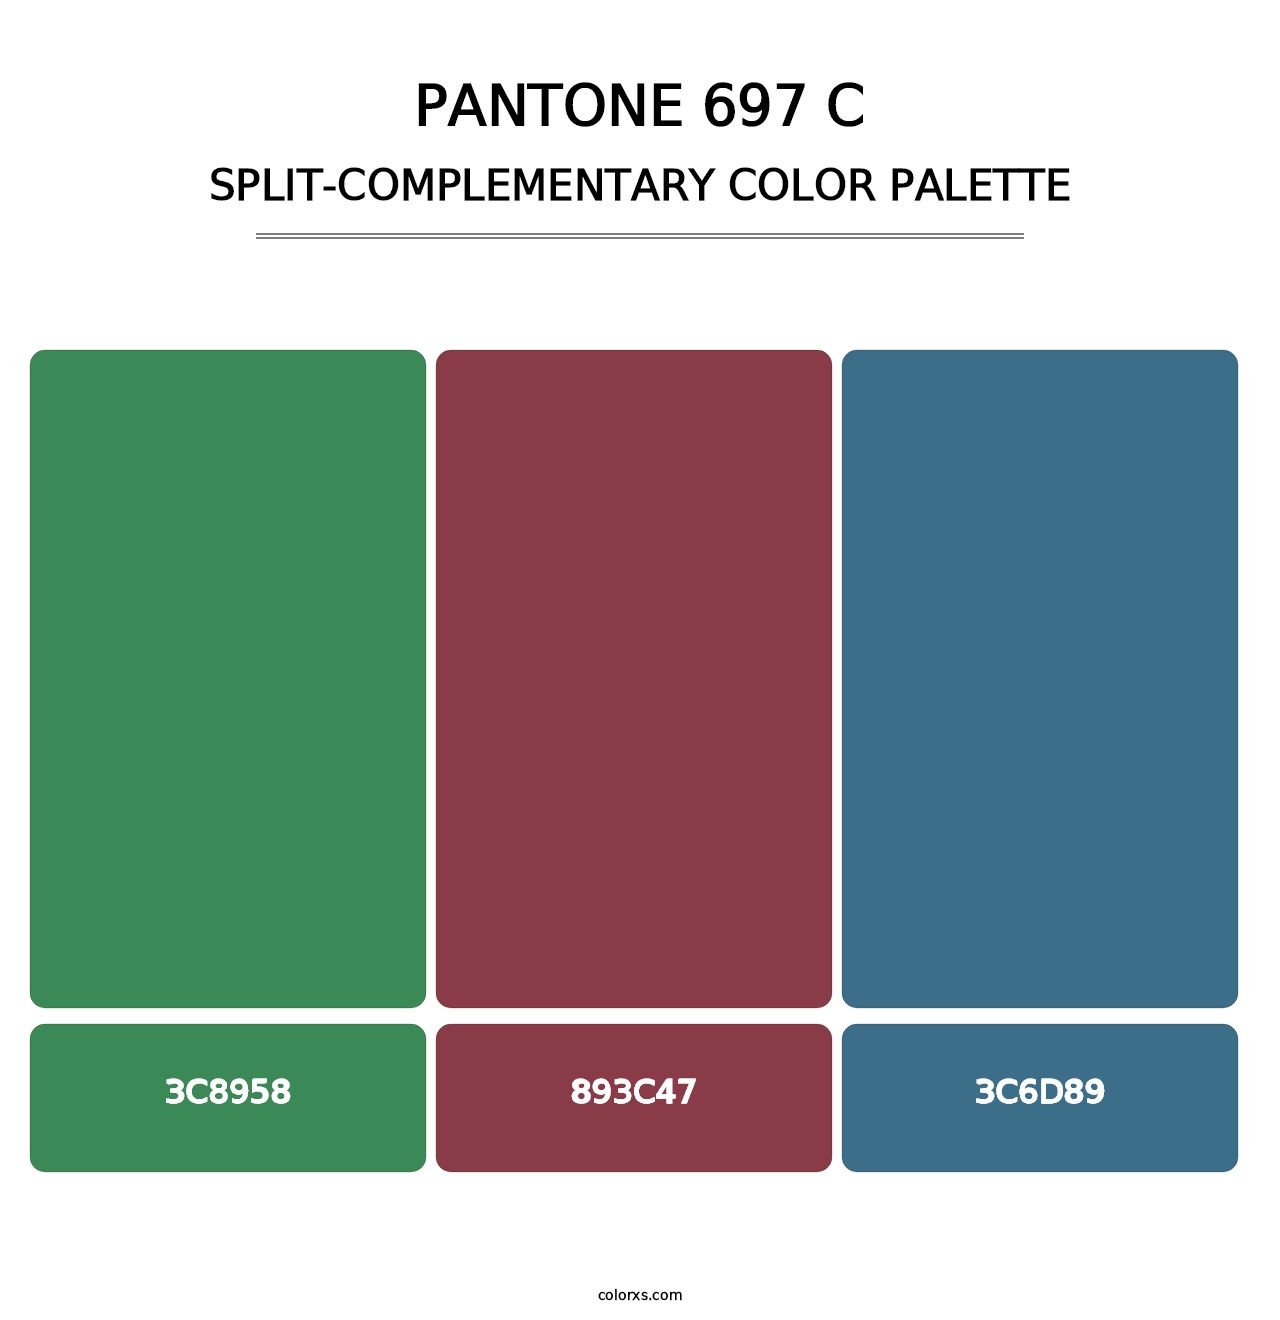 PANTONE 697 C - Split-Complementary Color Palette